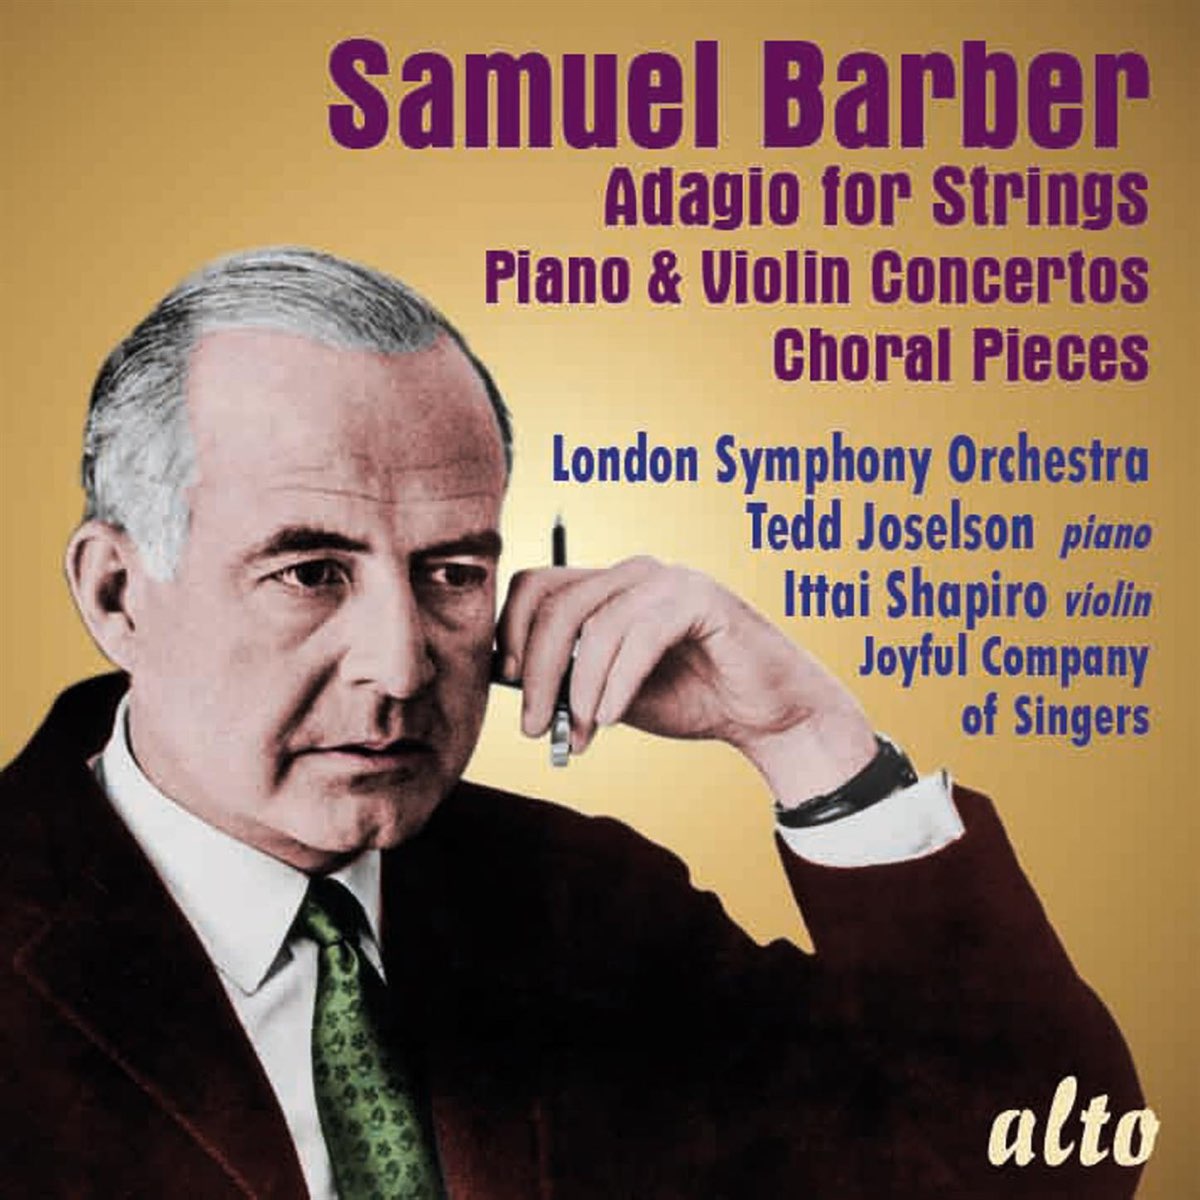 Barber adagio. Сэмюэл барбер. Samuel Barber. Samuel Barber Adagio for Strings CD. Barber: Adagio for Strings, op. 11 Андре Превин.